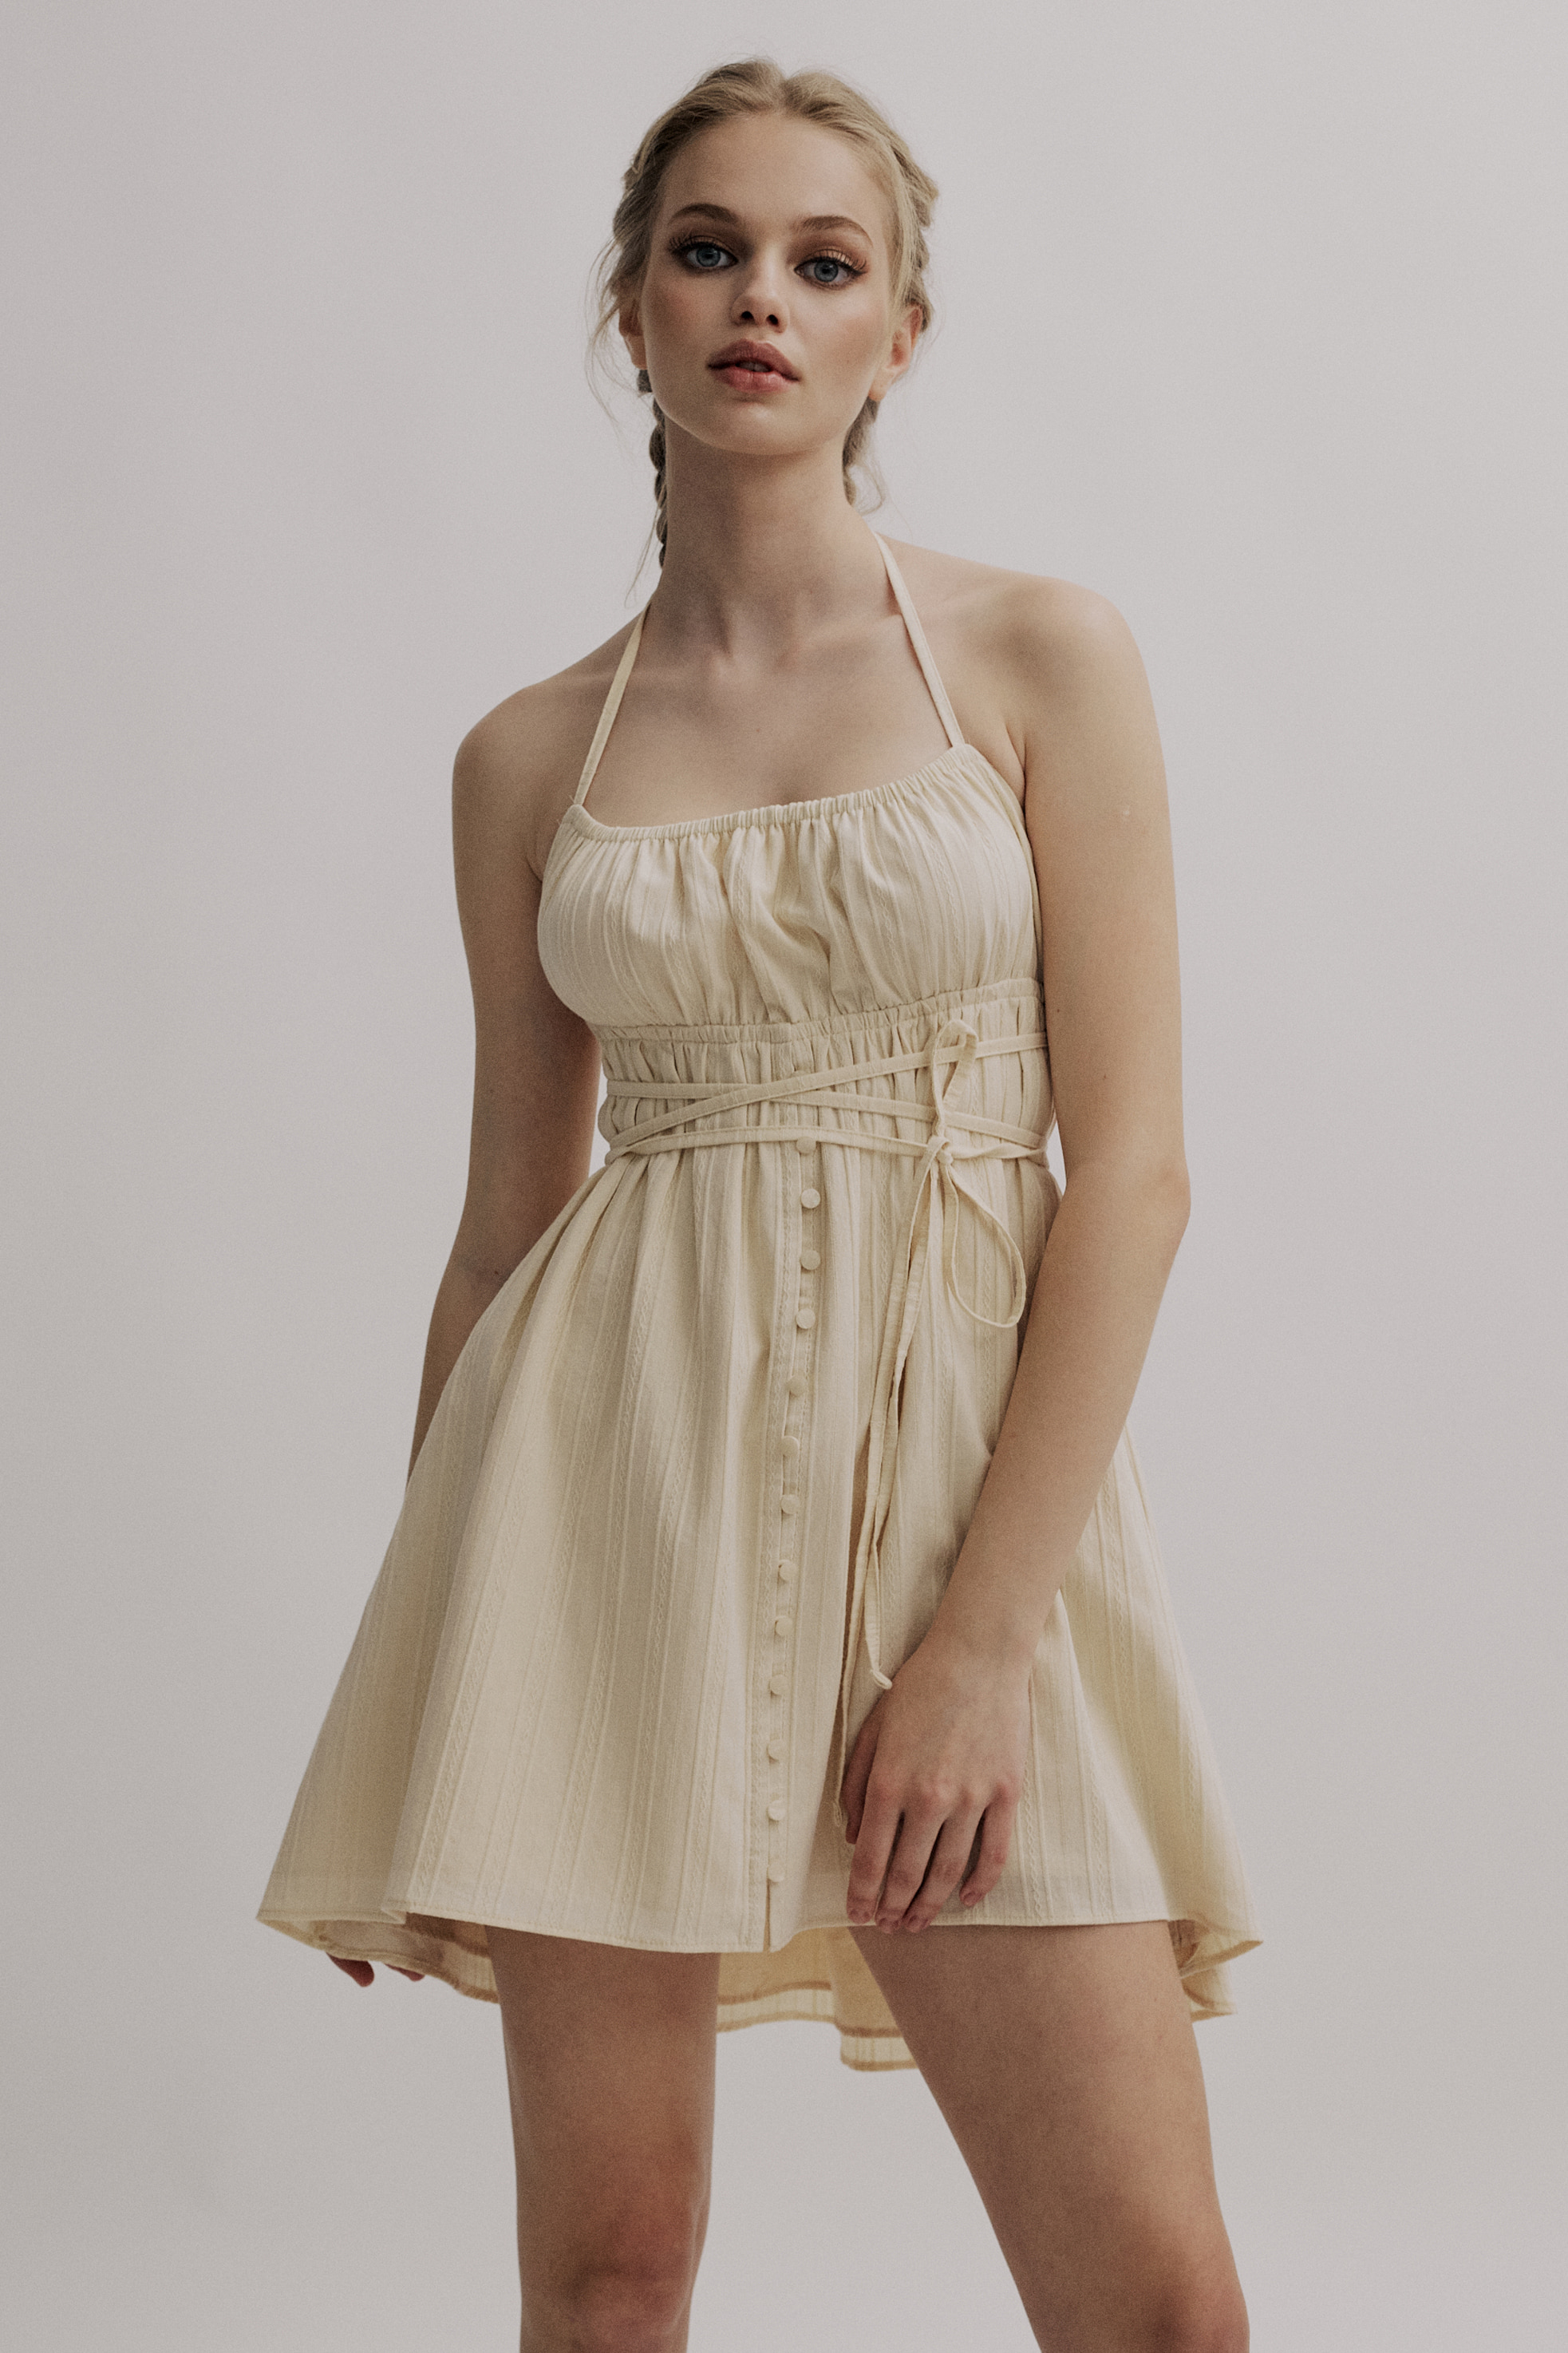 Vanilla halter dress